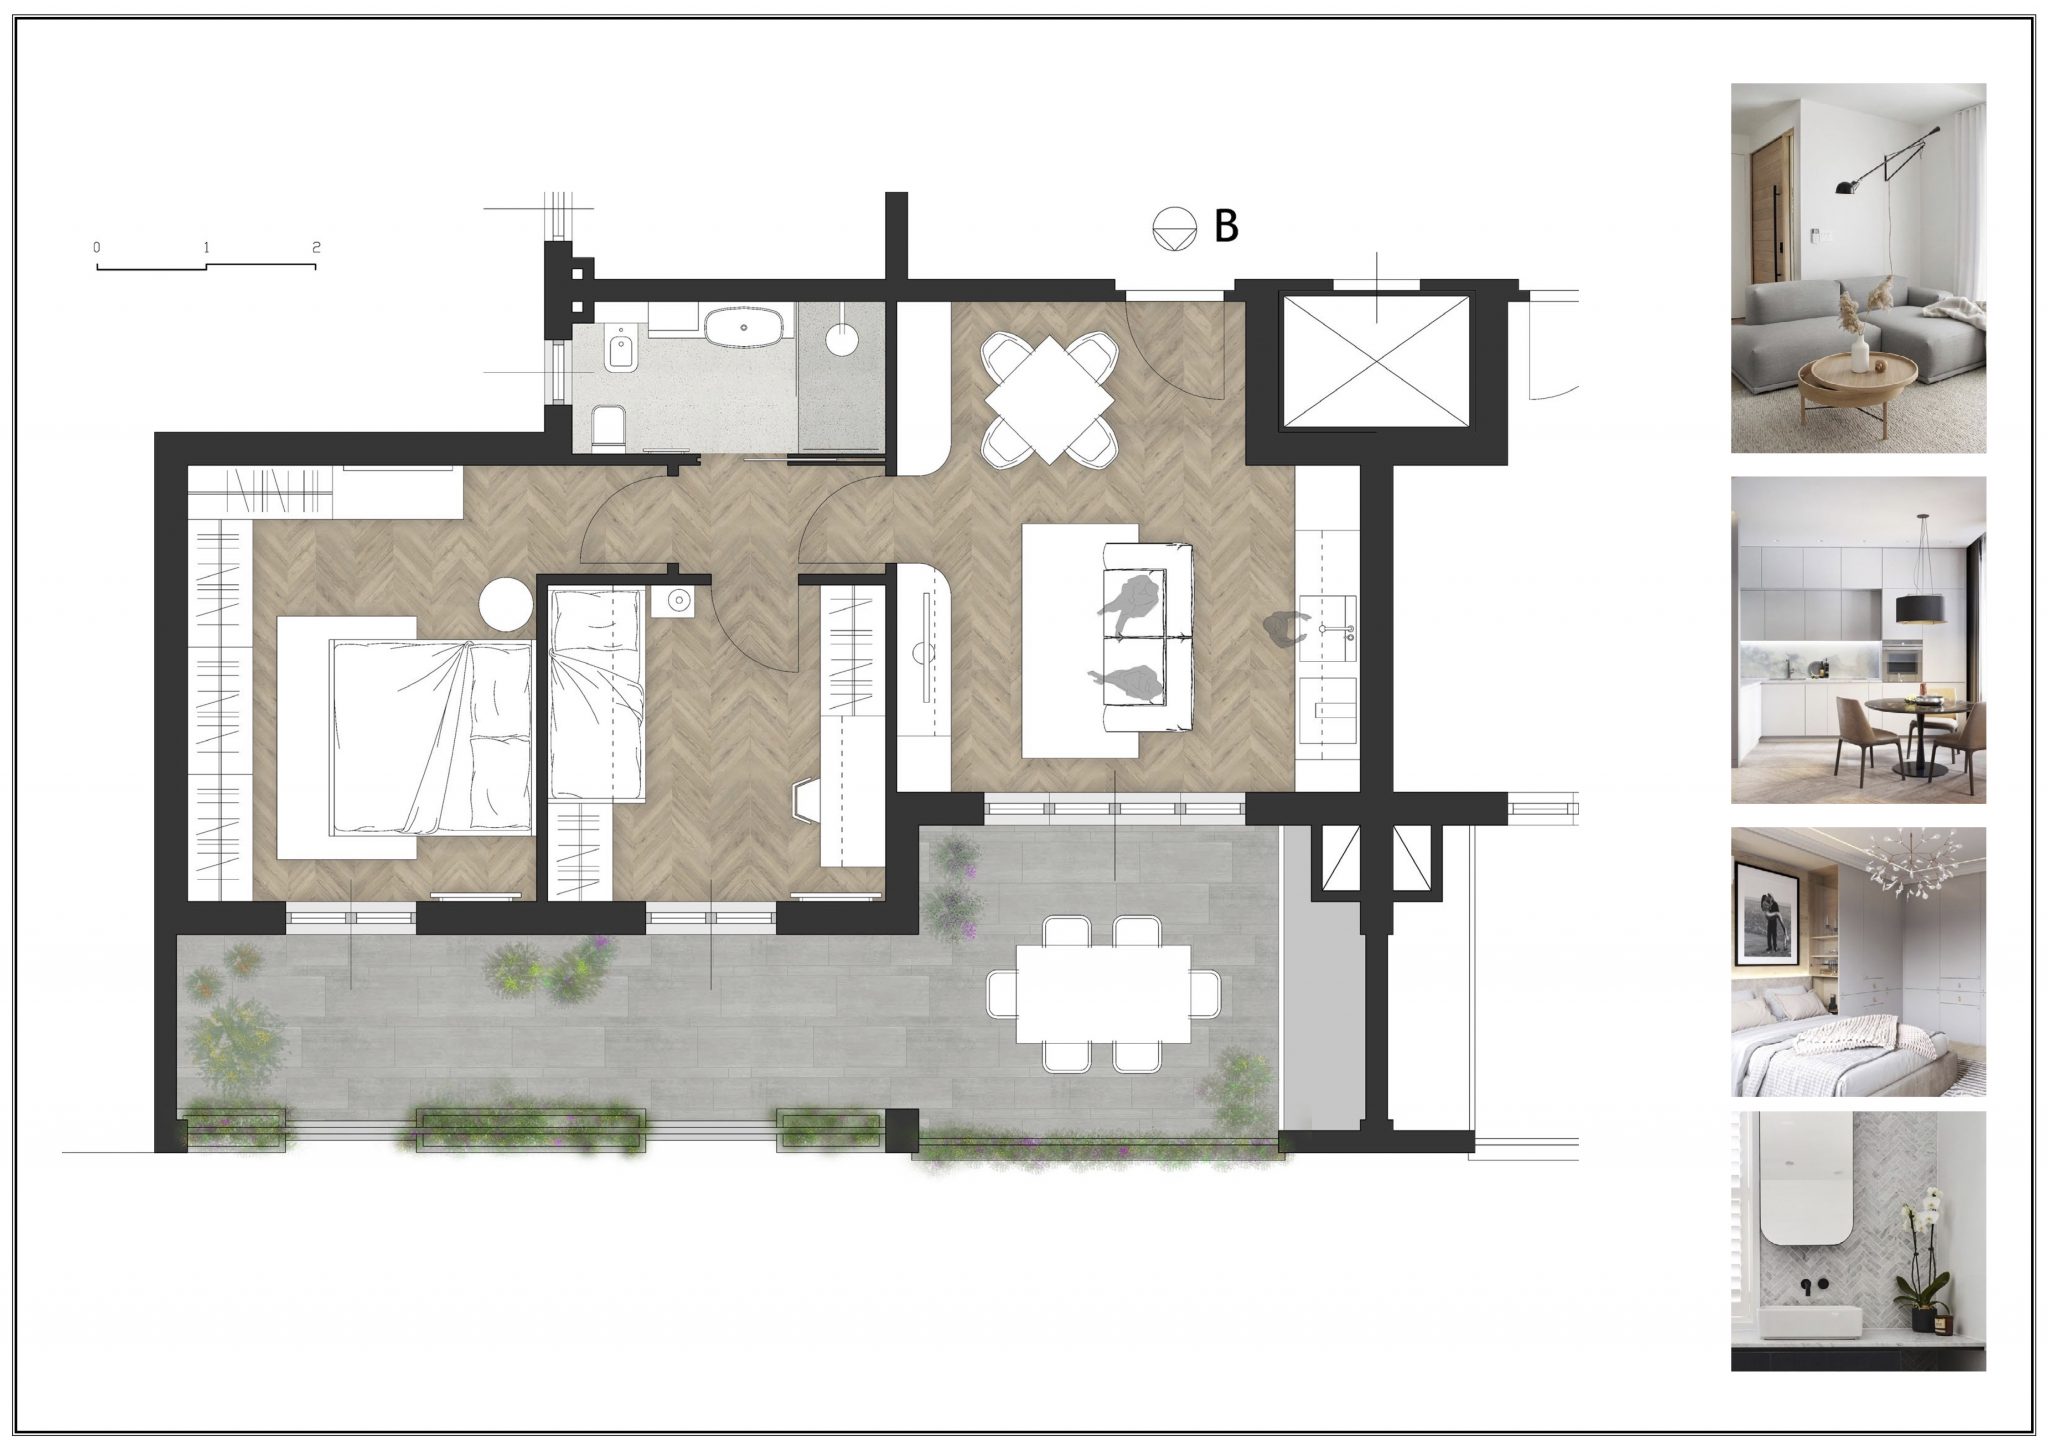 Grundriss und Darstellung einer 75 qm Wohnung mit Terrasse, die über den gesamten Wohnbereich zugänglich ist. Schönes Tageslichtbad mit Dusche, Waschbecken, WC und Bidet.